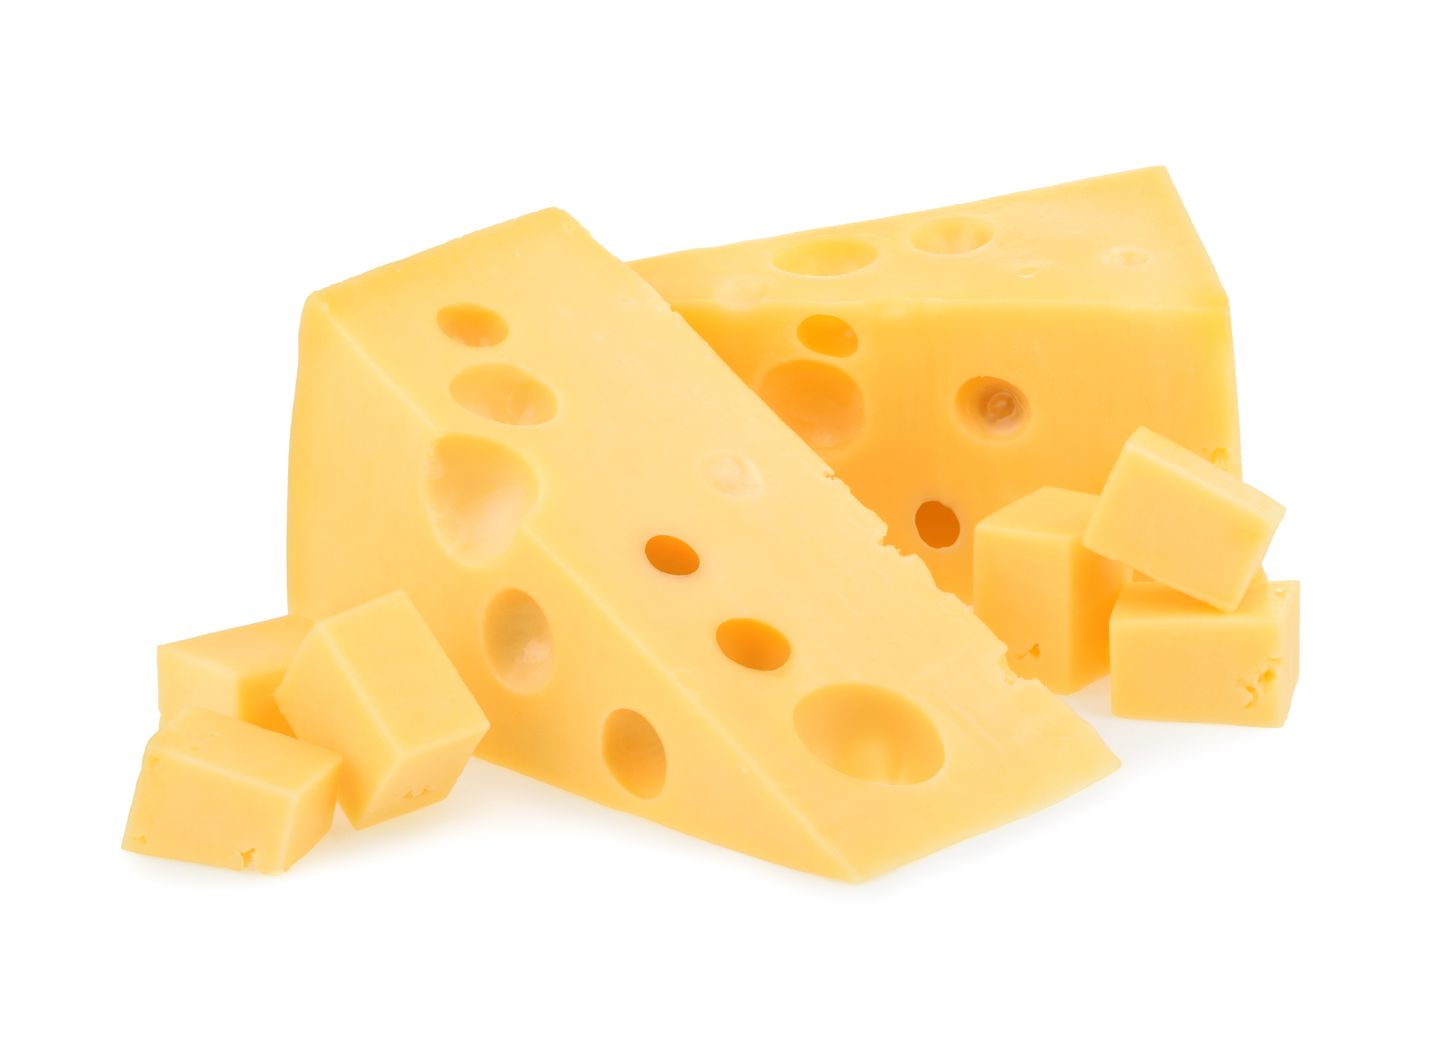 Сыр. Иллюстративное фото